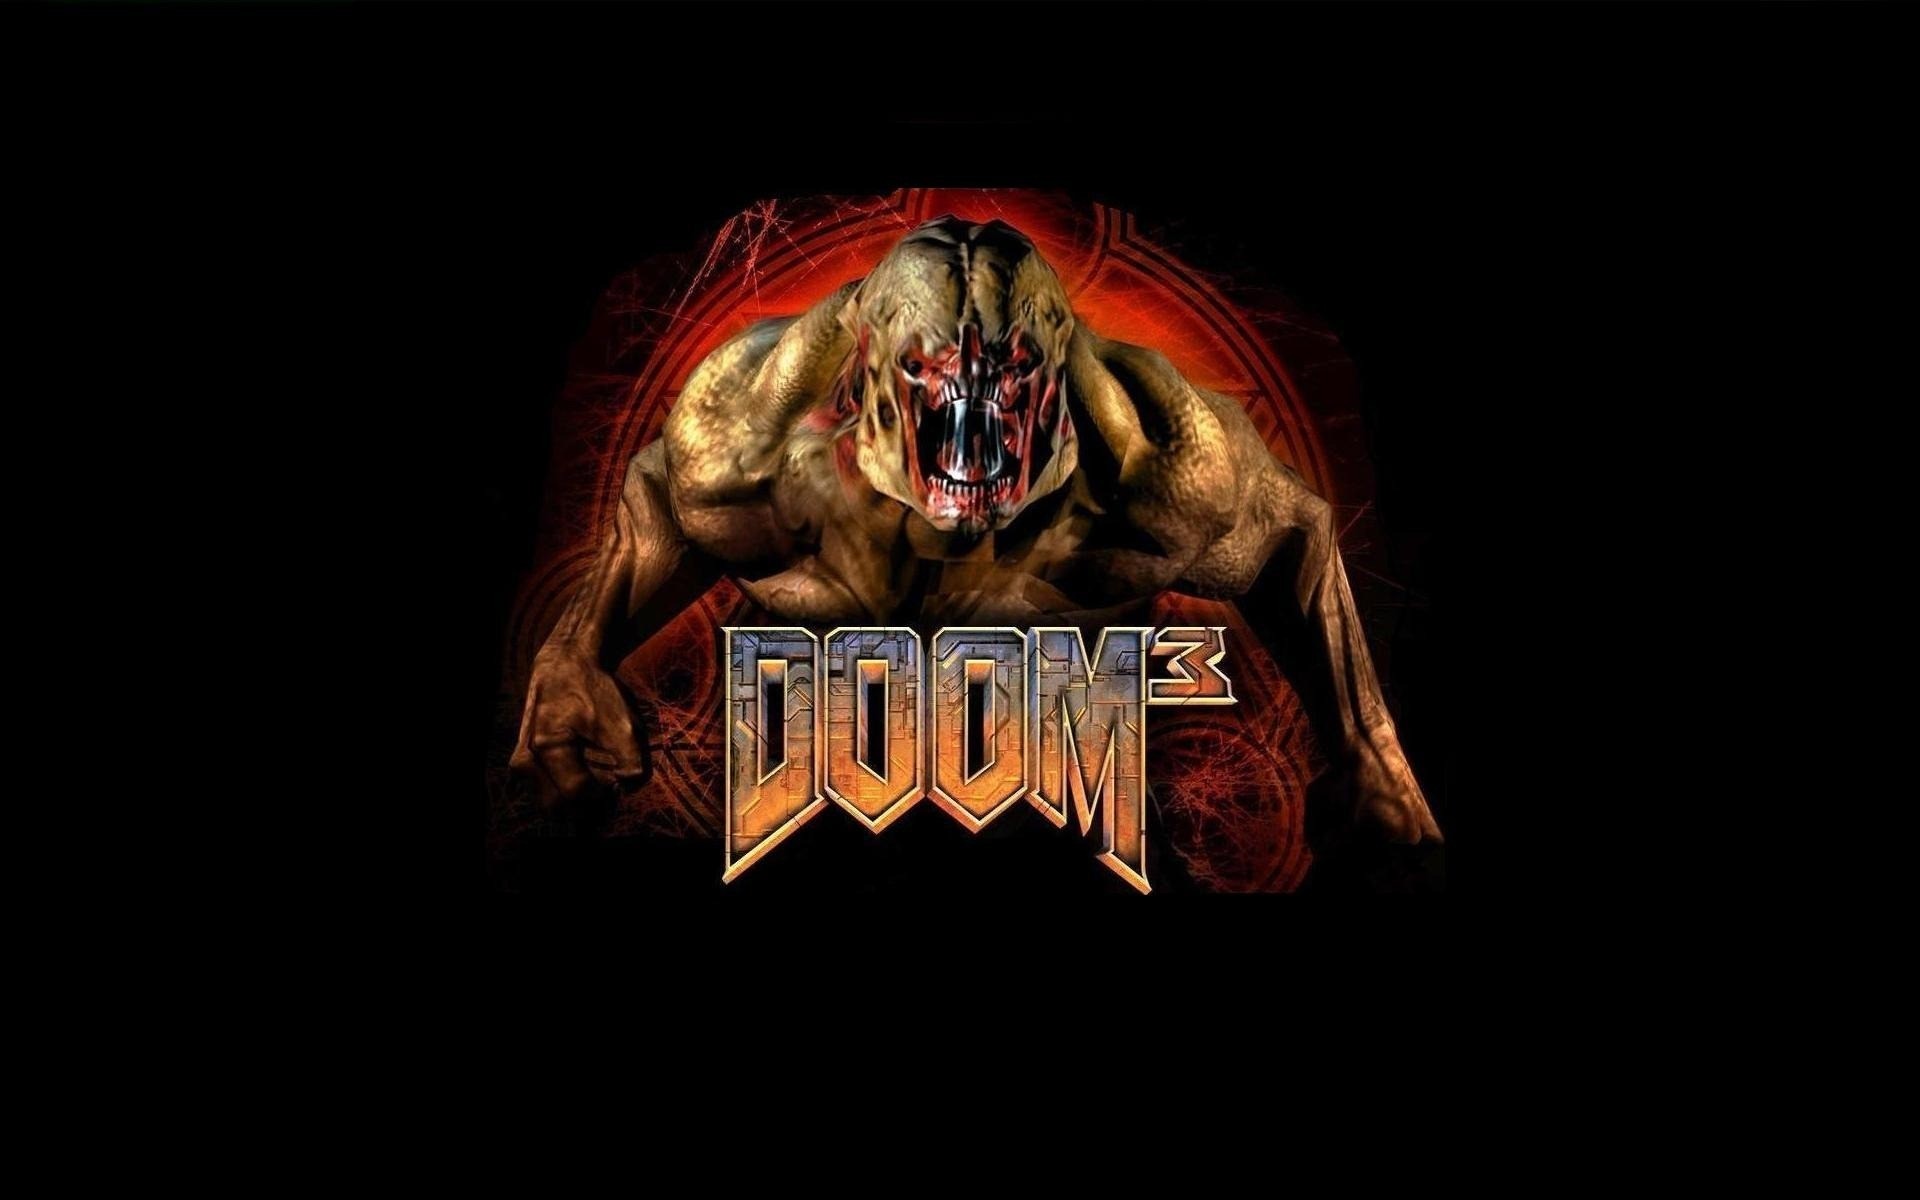 Descargar fondos de escritorio de Doom 3 HD